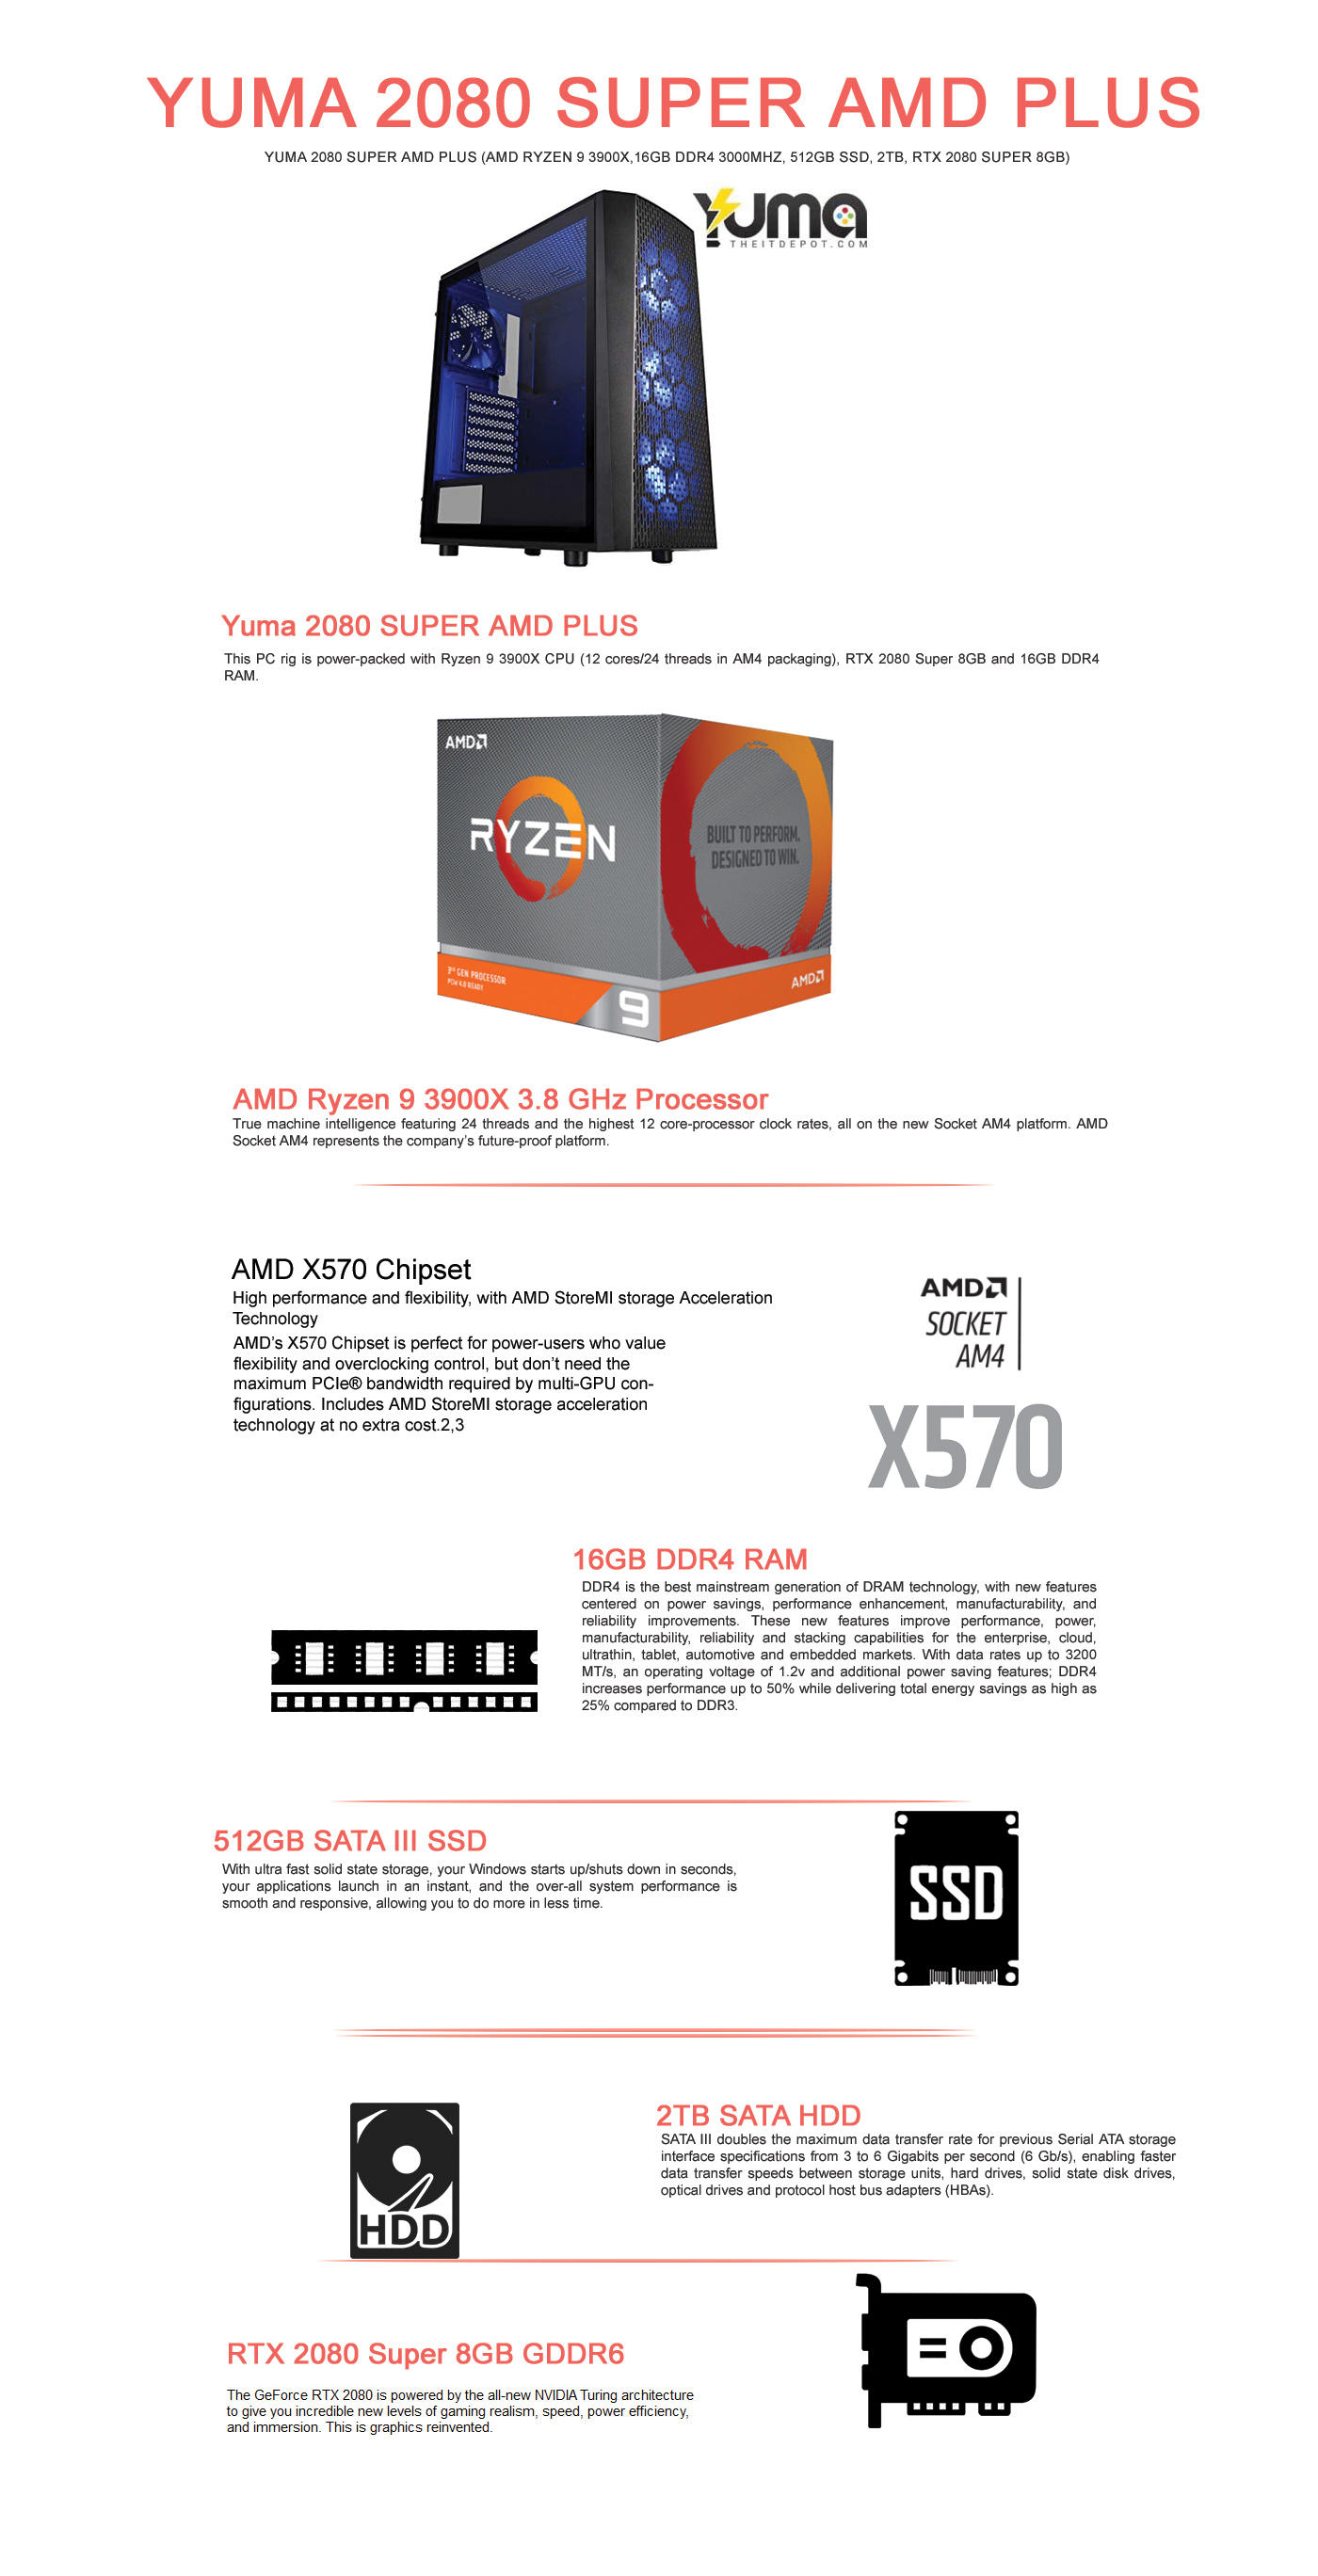 Buy Online Yuma 2080 Super AMD Plus (AMD Ryzen 9 3900X, 16GB, 500GB SSD, 2TB, RTX 2080 8GB)